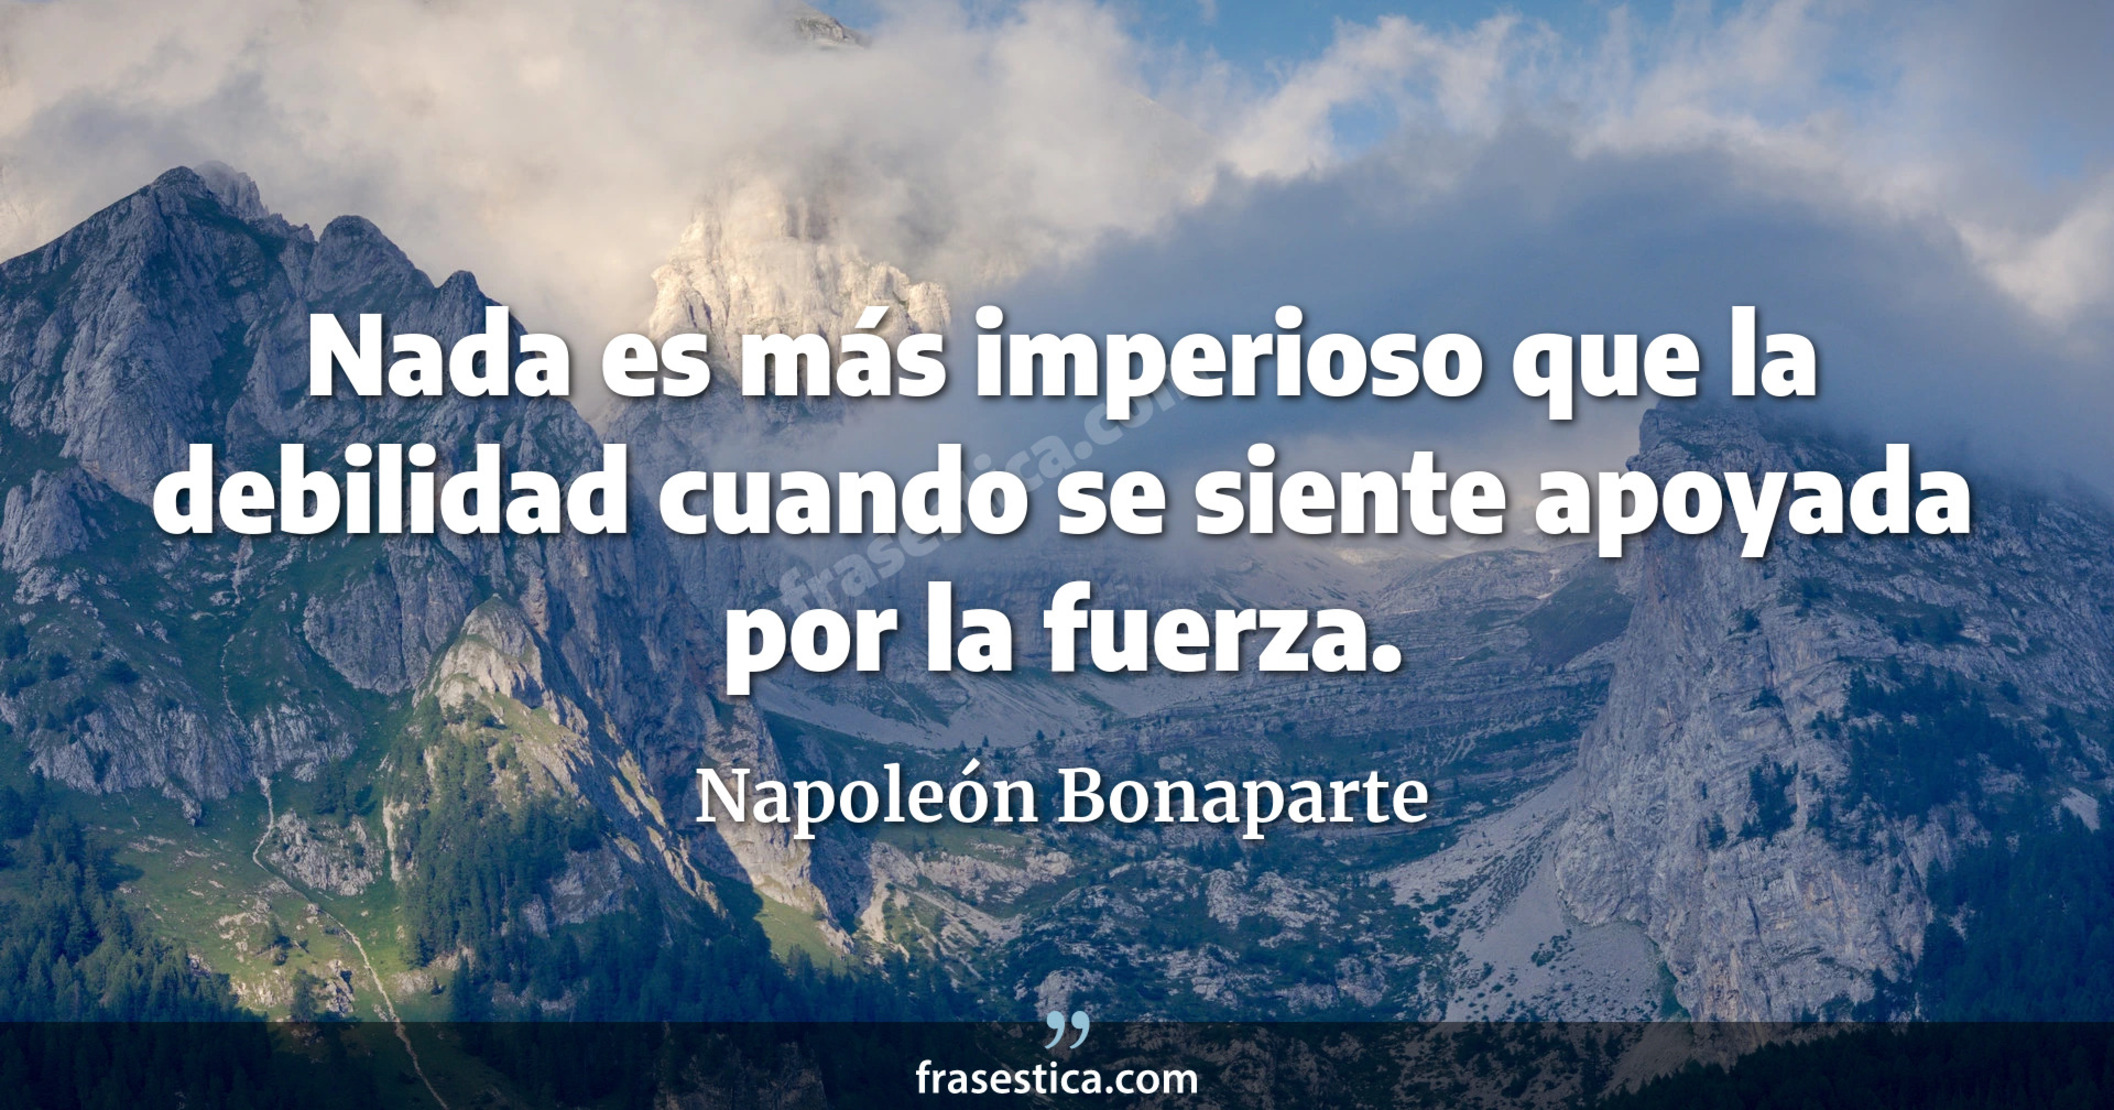 Nada es más imperioso que la debilidad cuando se siente apoyada por la fuerza. - Napoleón Bonaparte